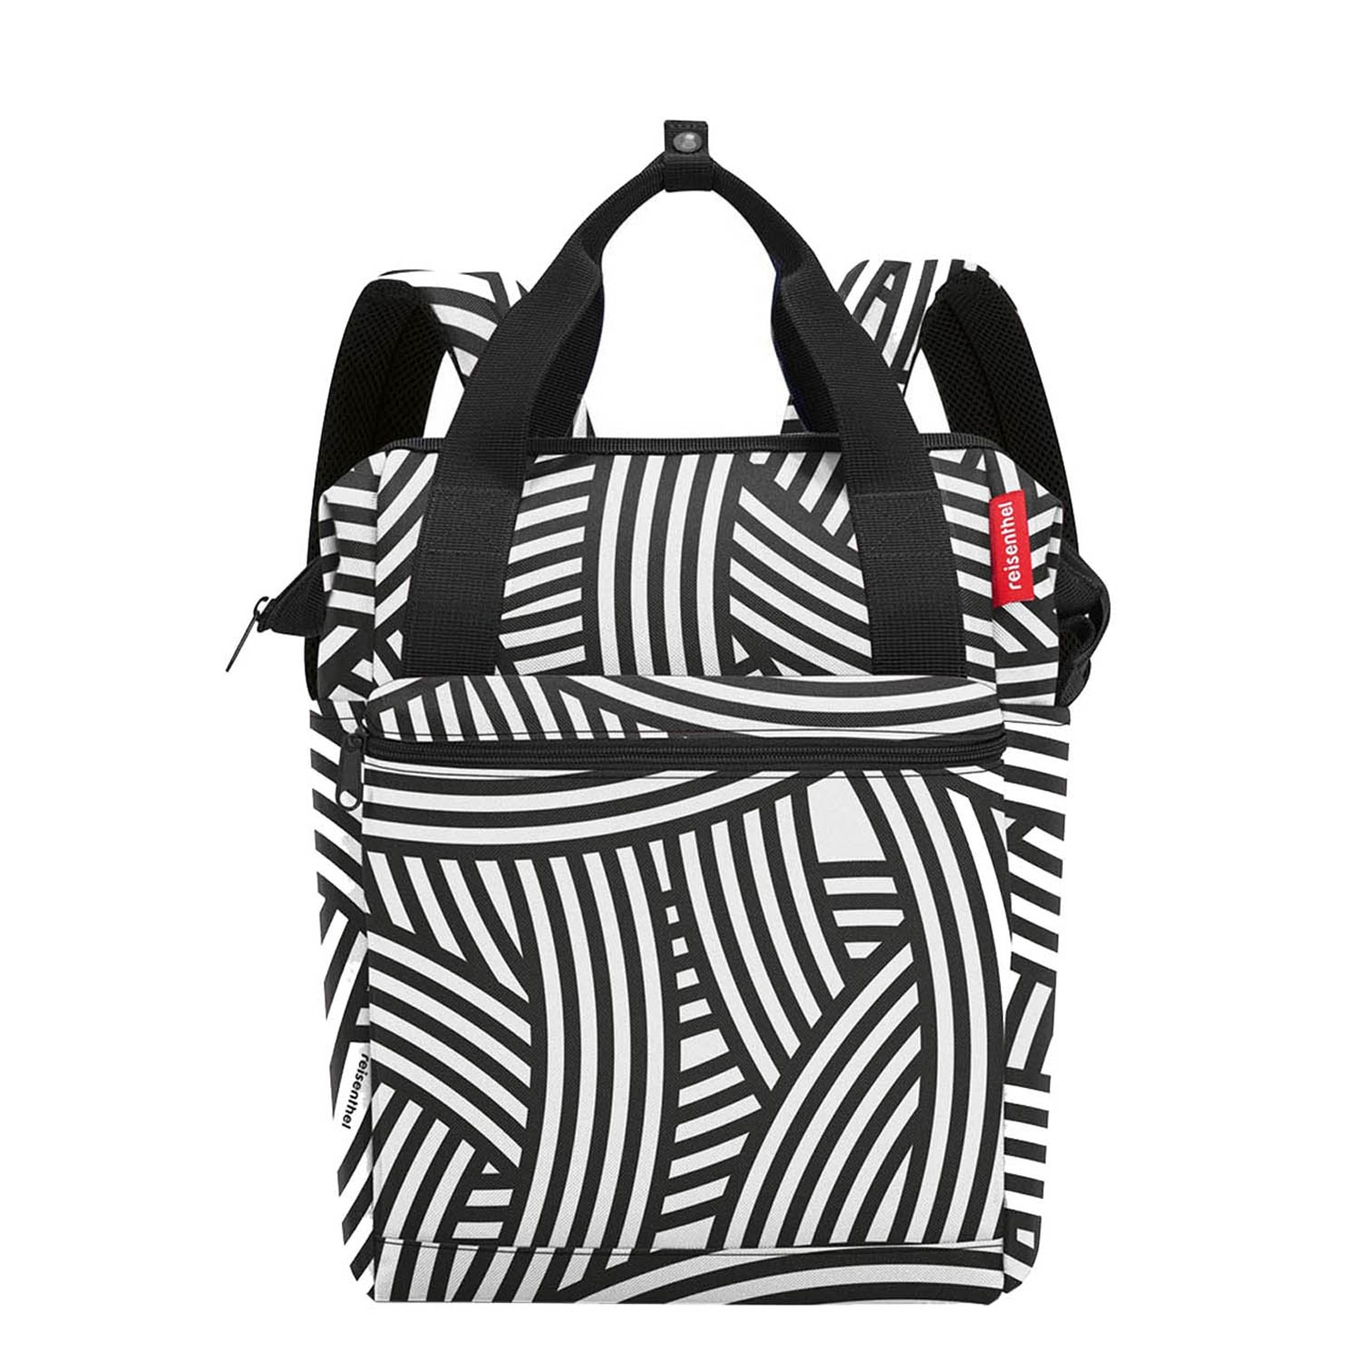 Reisenthel Travelling Allrounder R zebra backpack